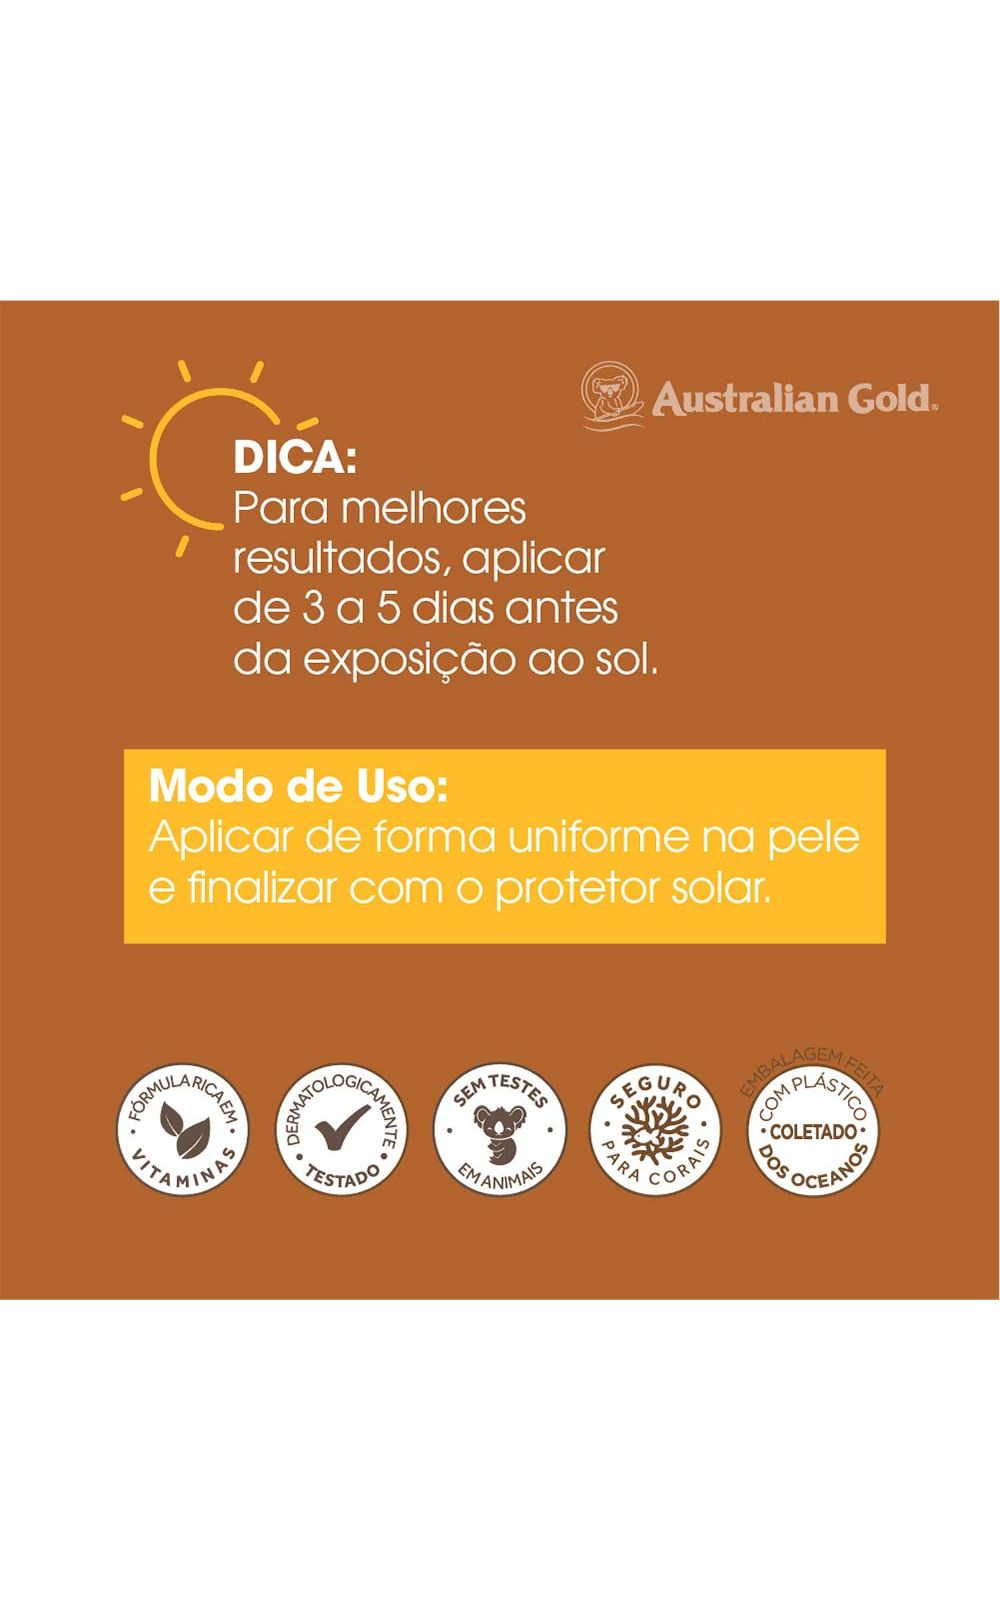 Foto 7 - Acelerador de Bronzeado Australian Gold - Dark Tanning Instant com Bronzer - 237g